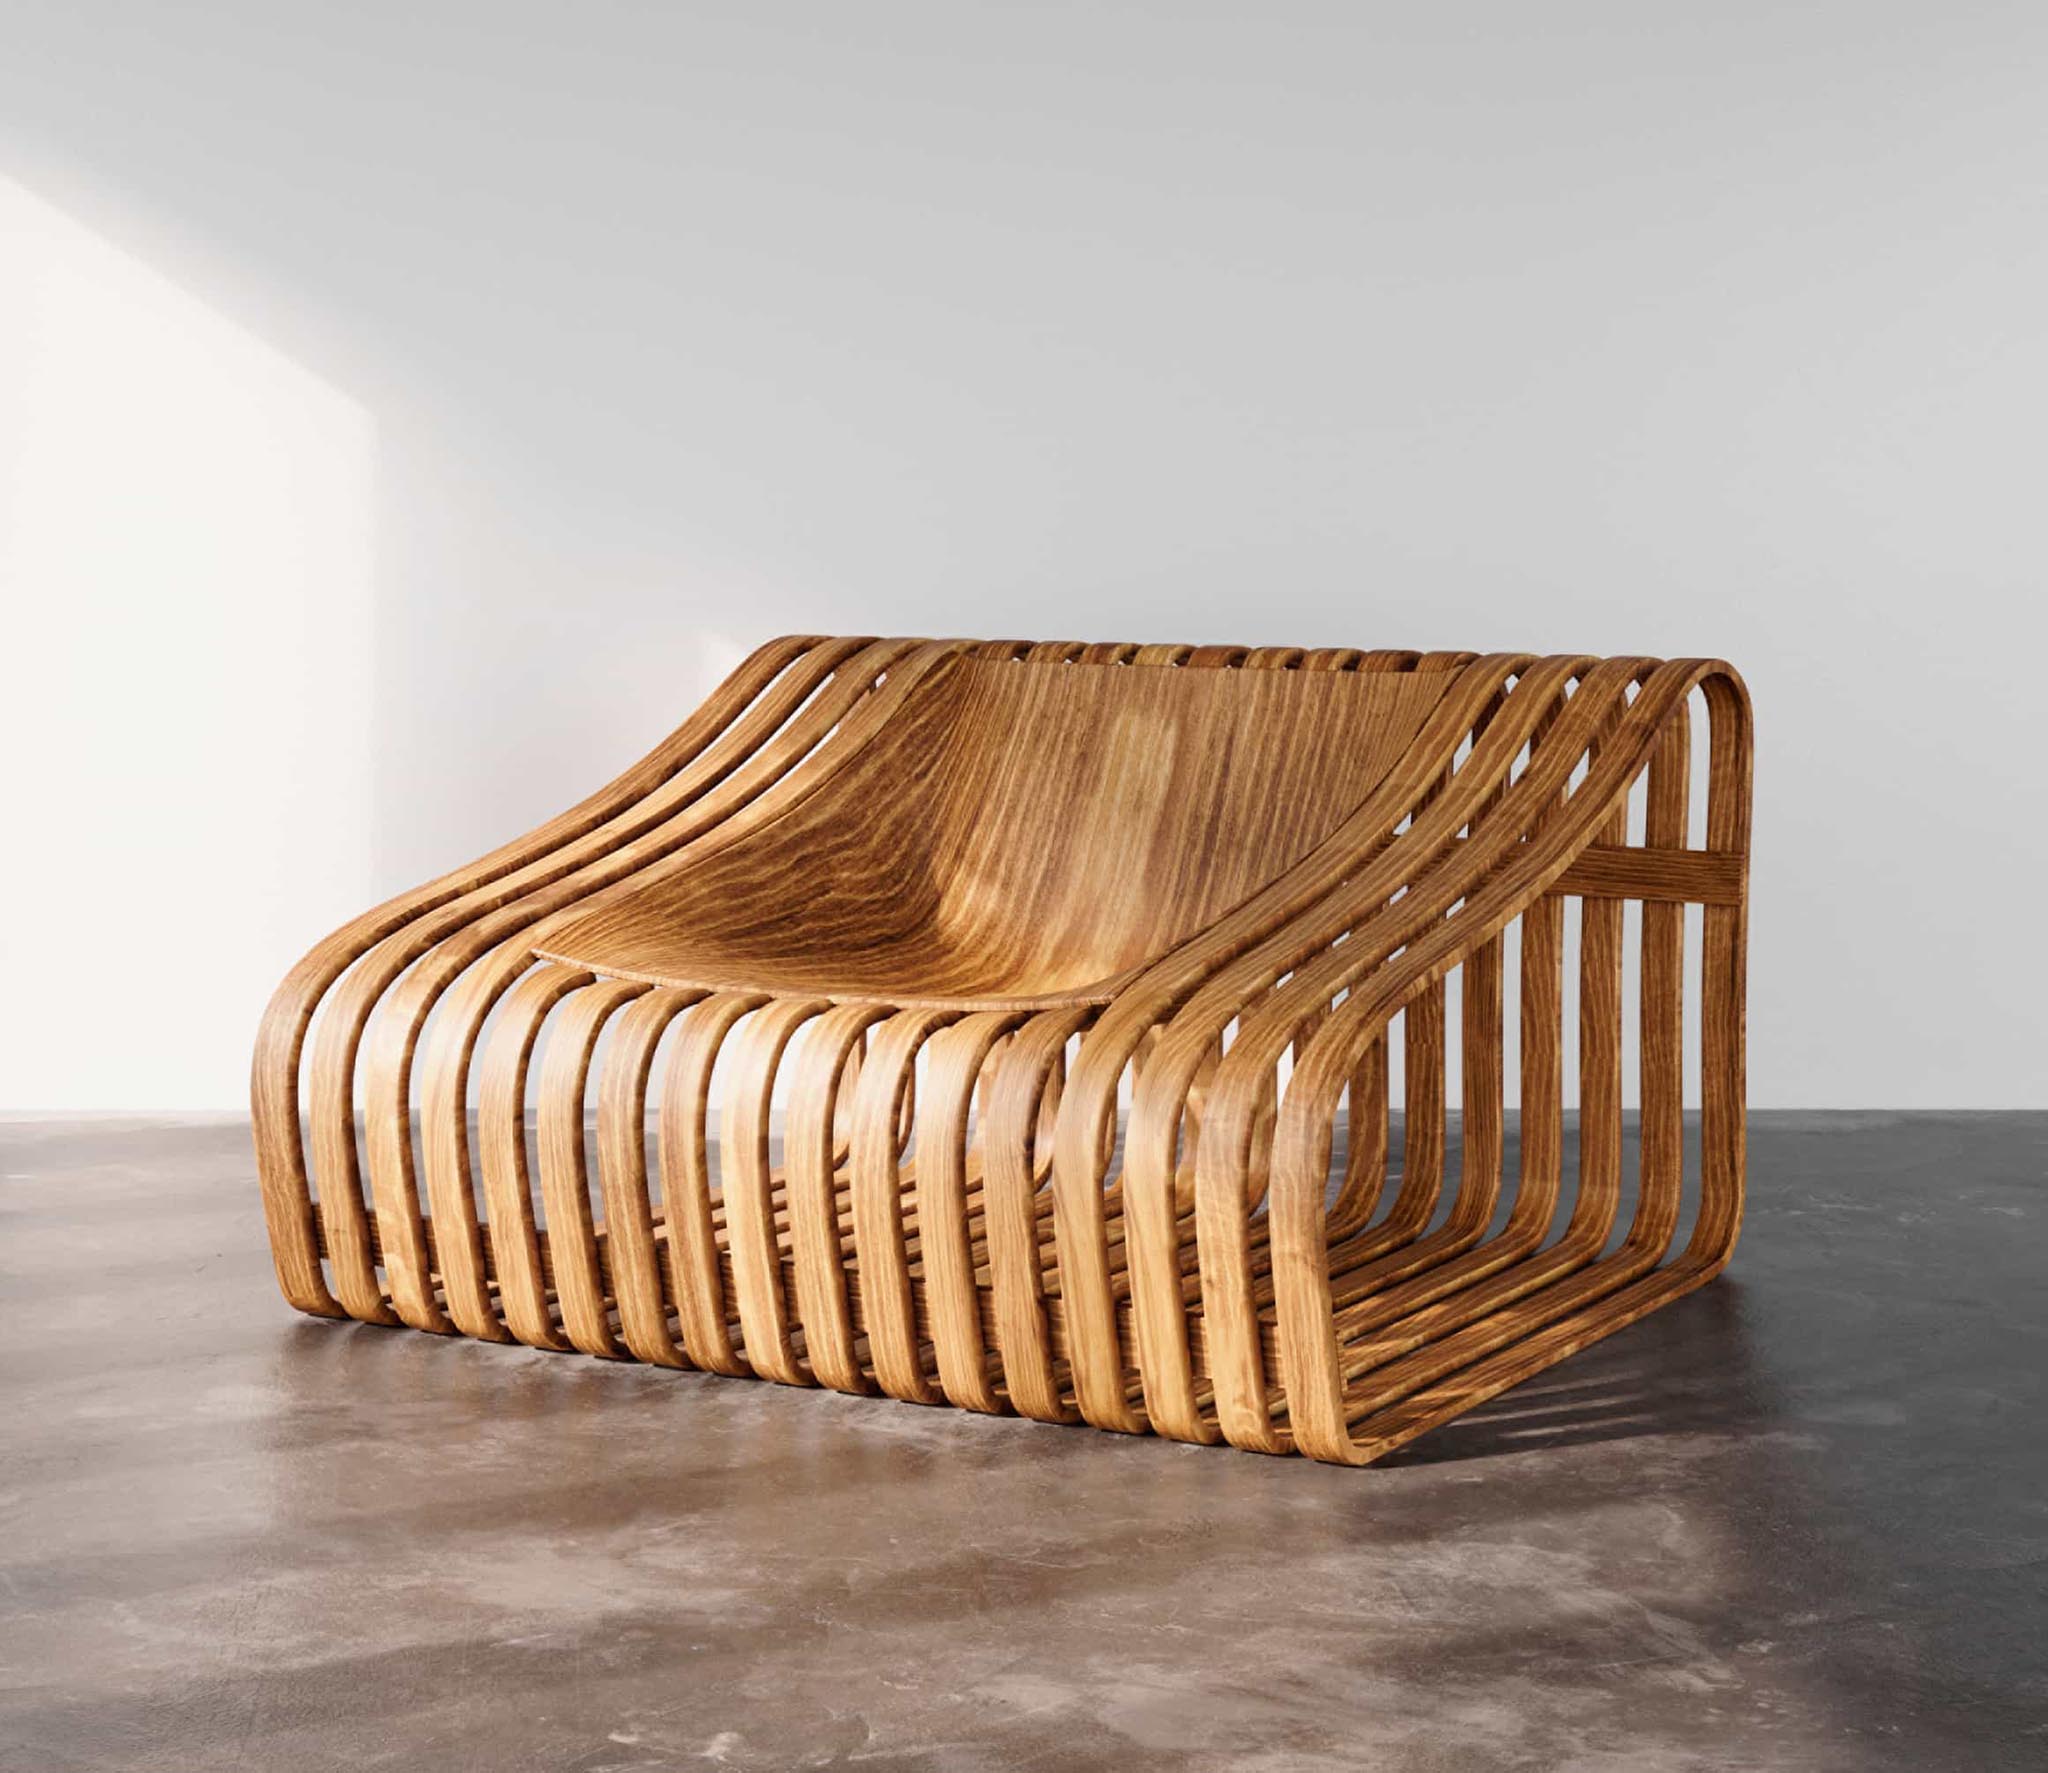 minimalist sculptural wooden chair by Mimi Shodeinde